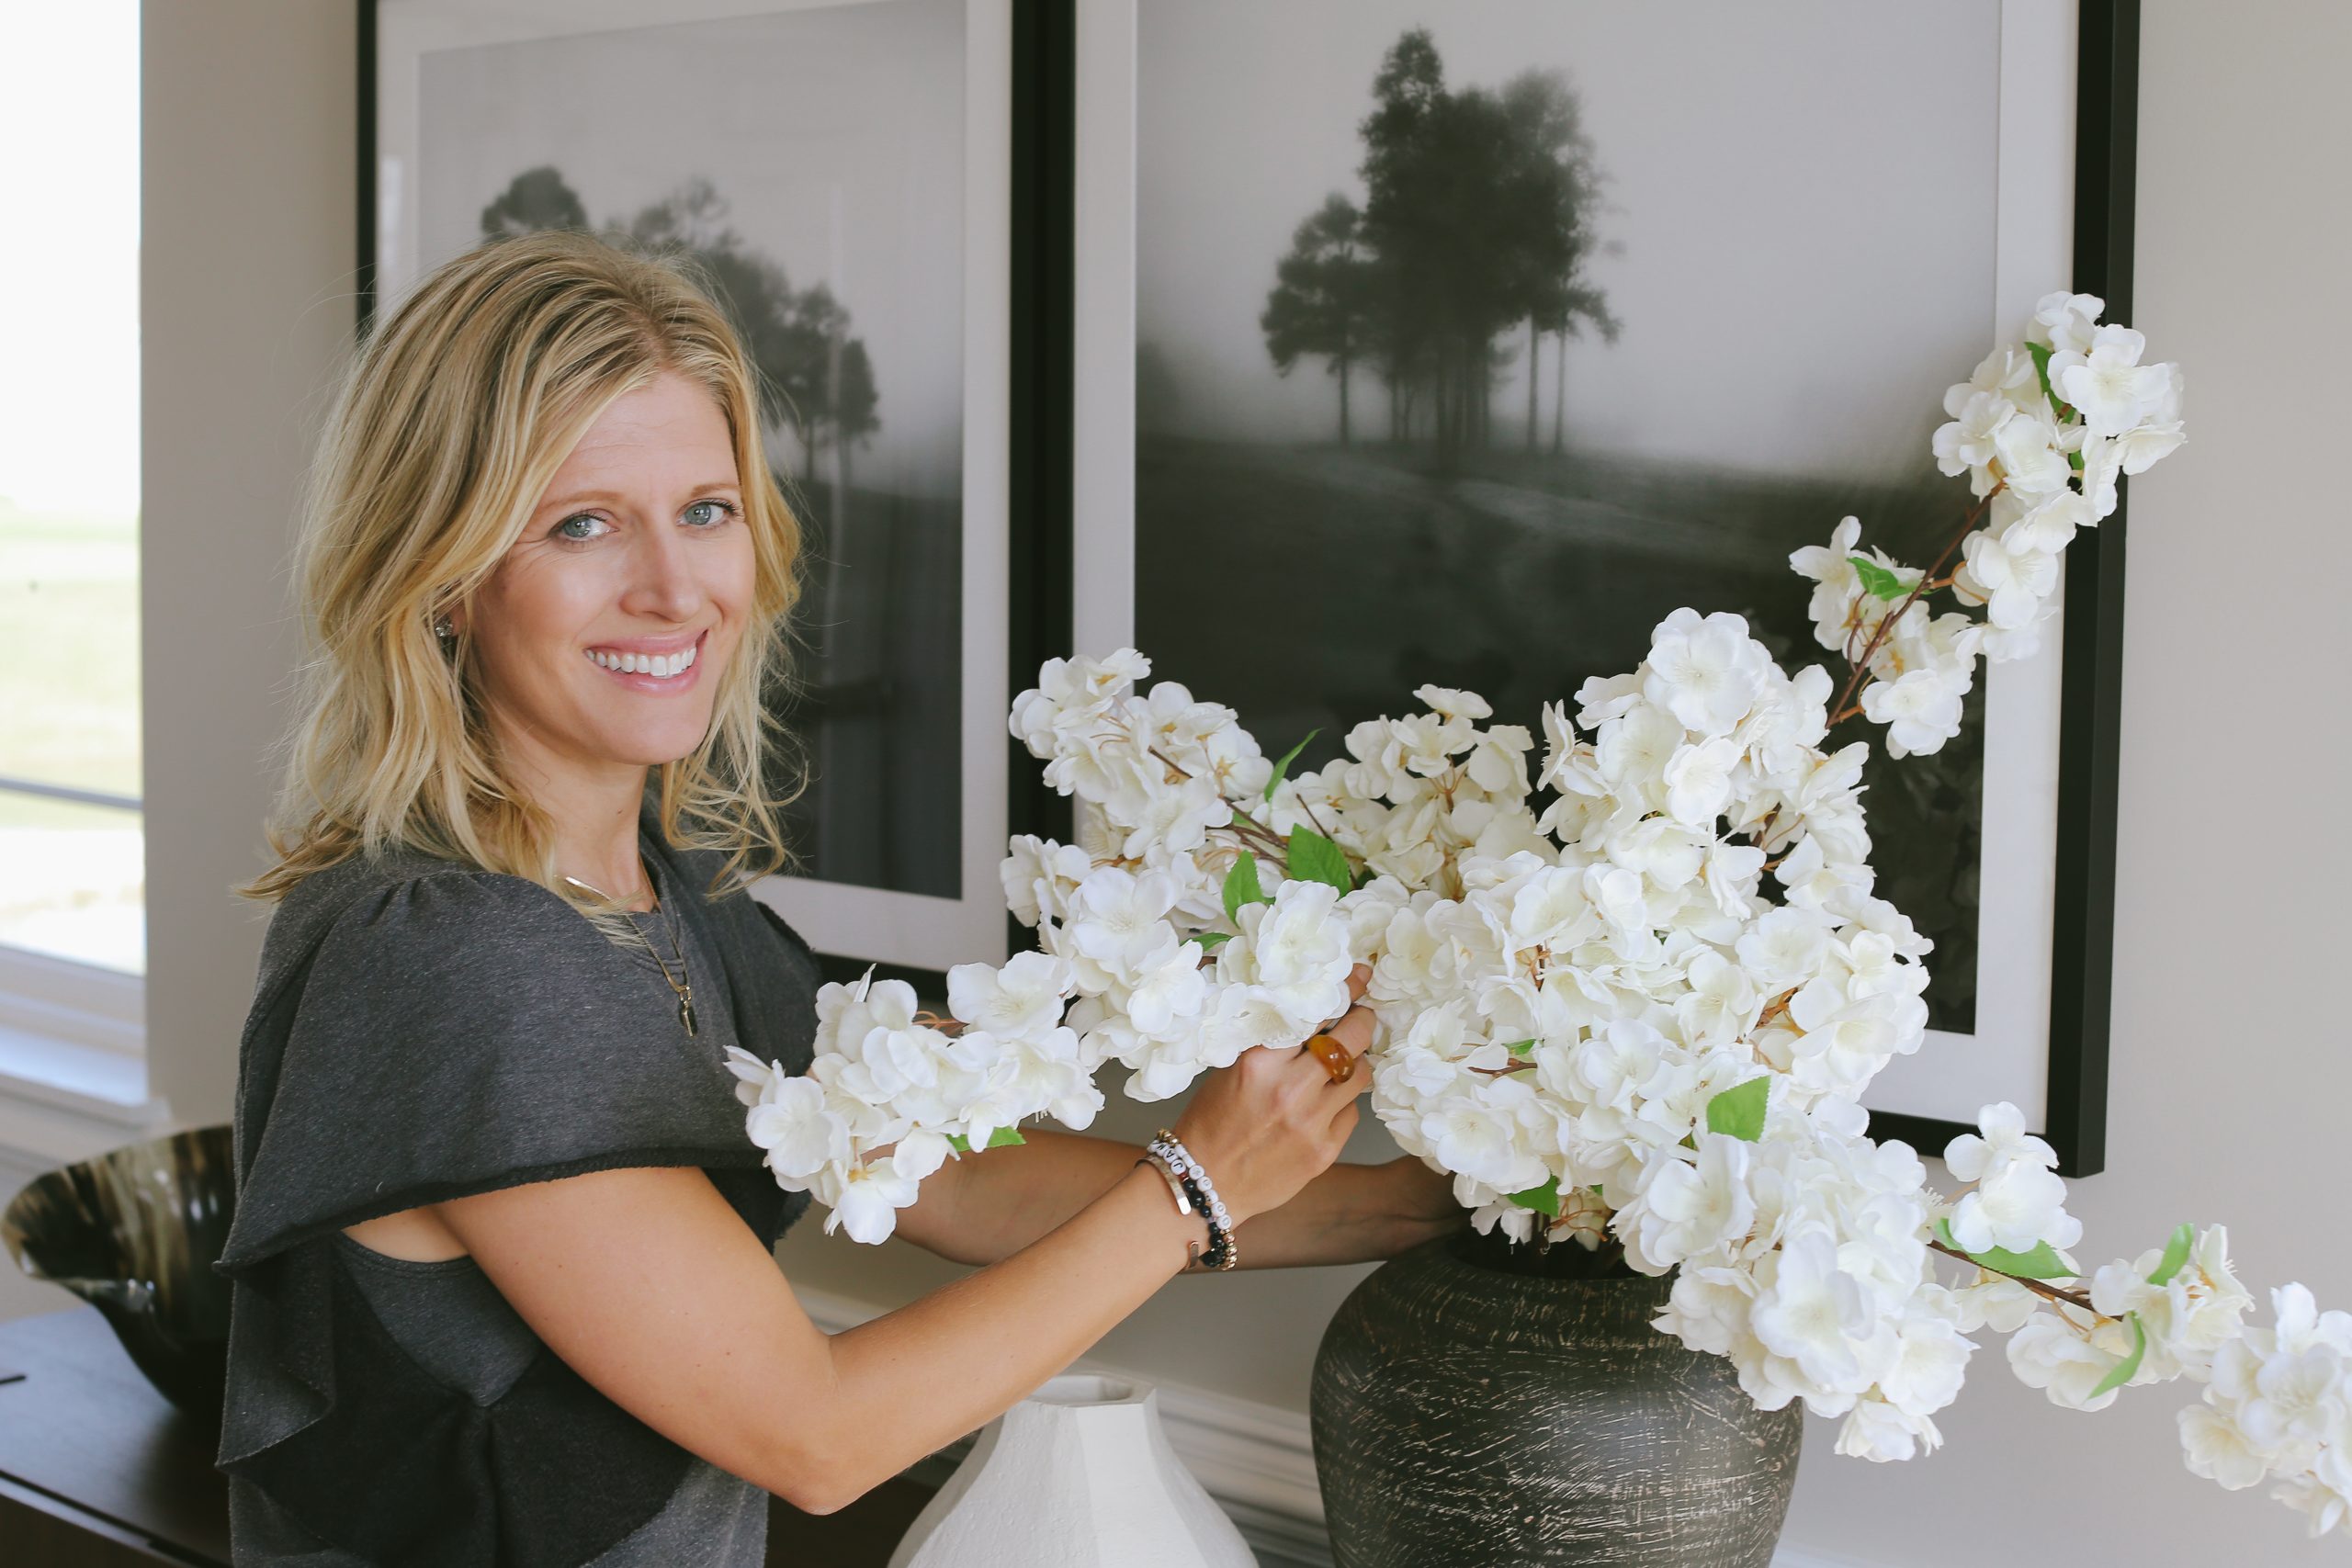 Whitney Vrendenburgh arranging flowers